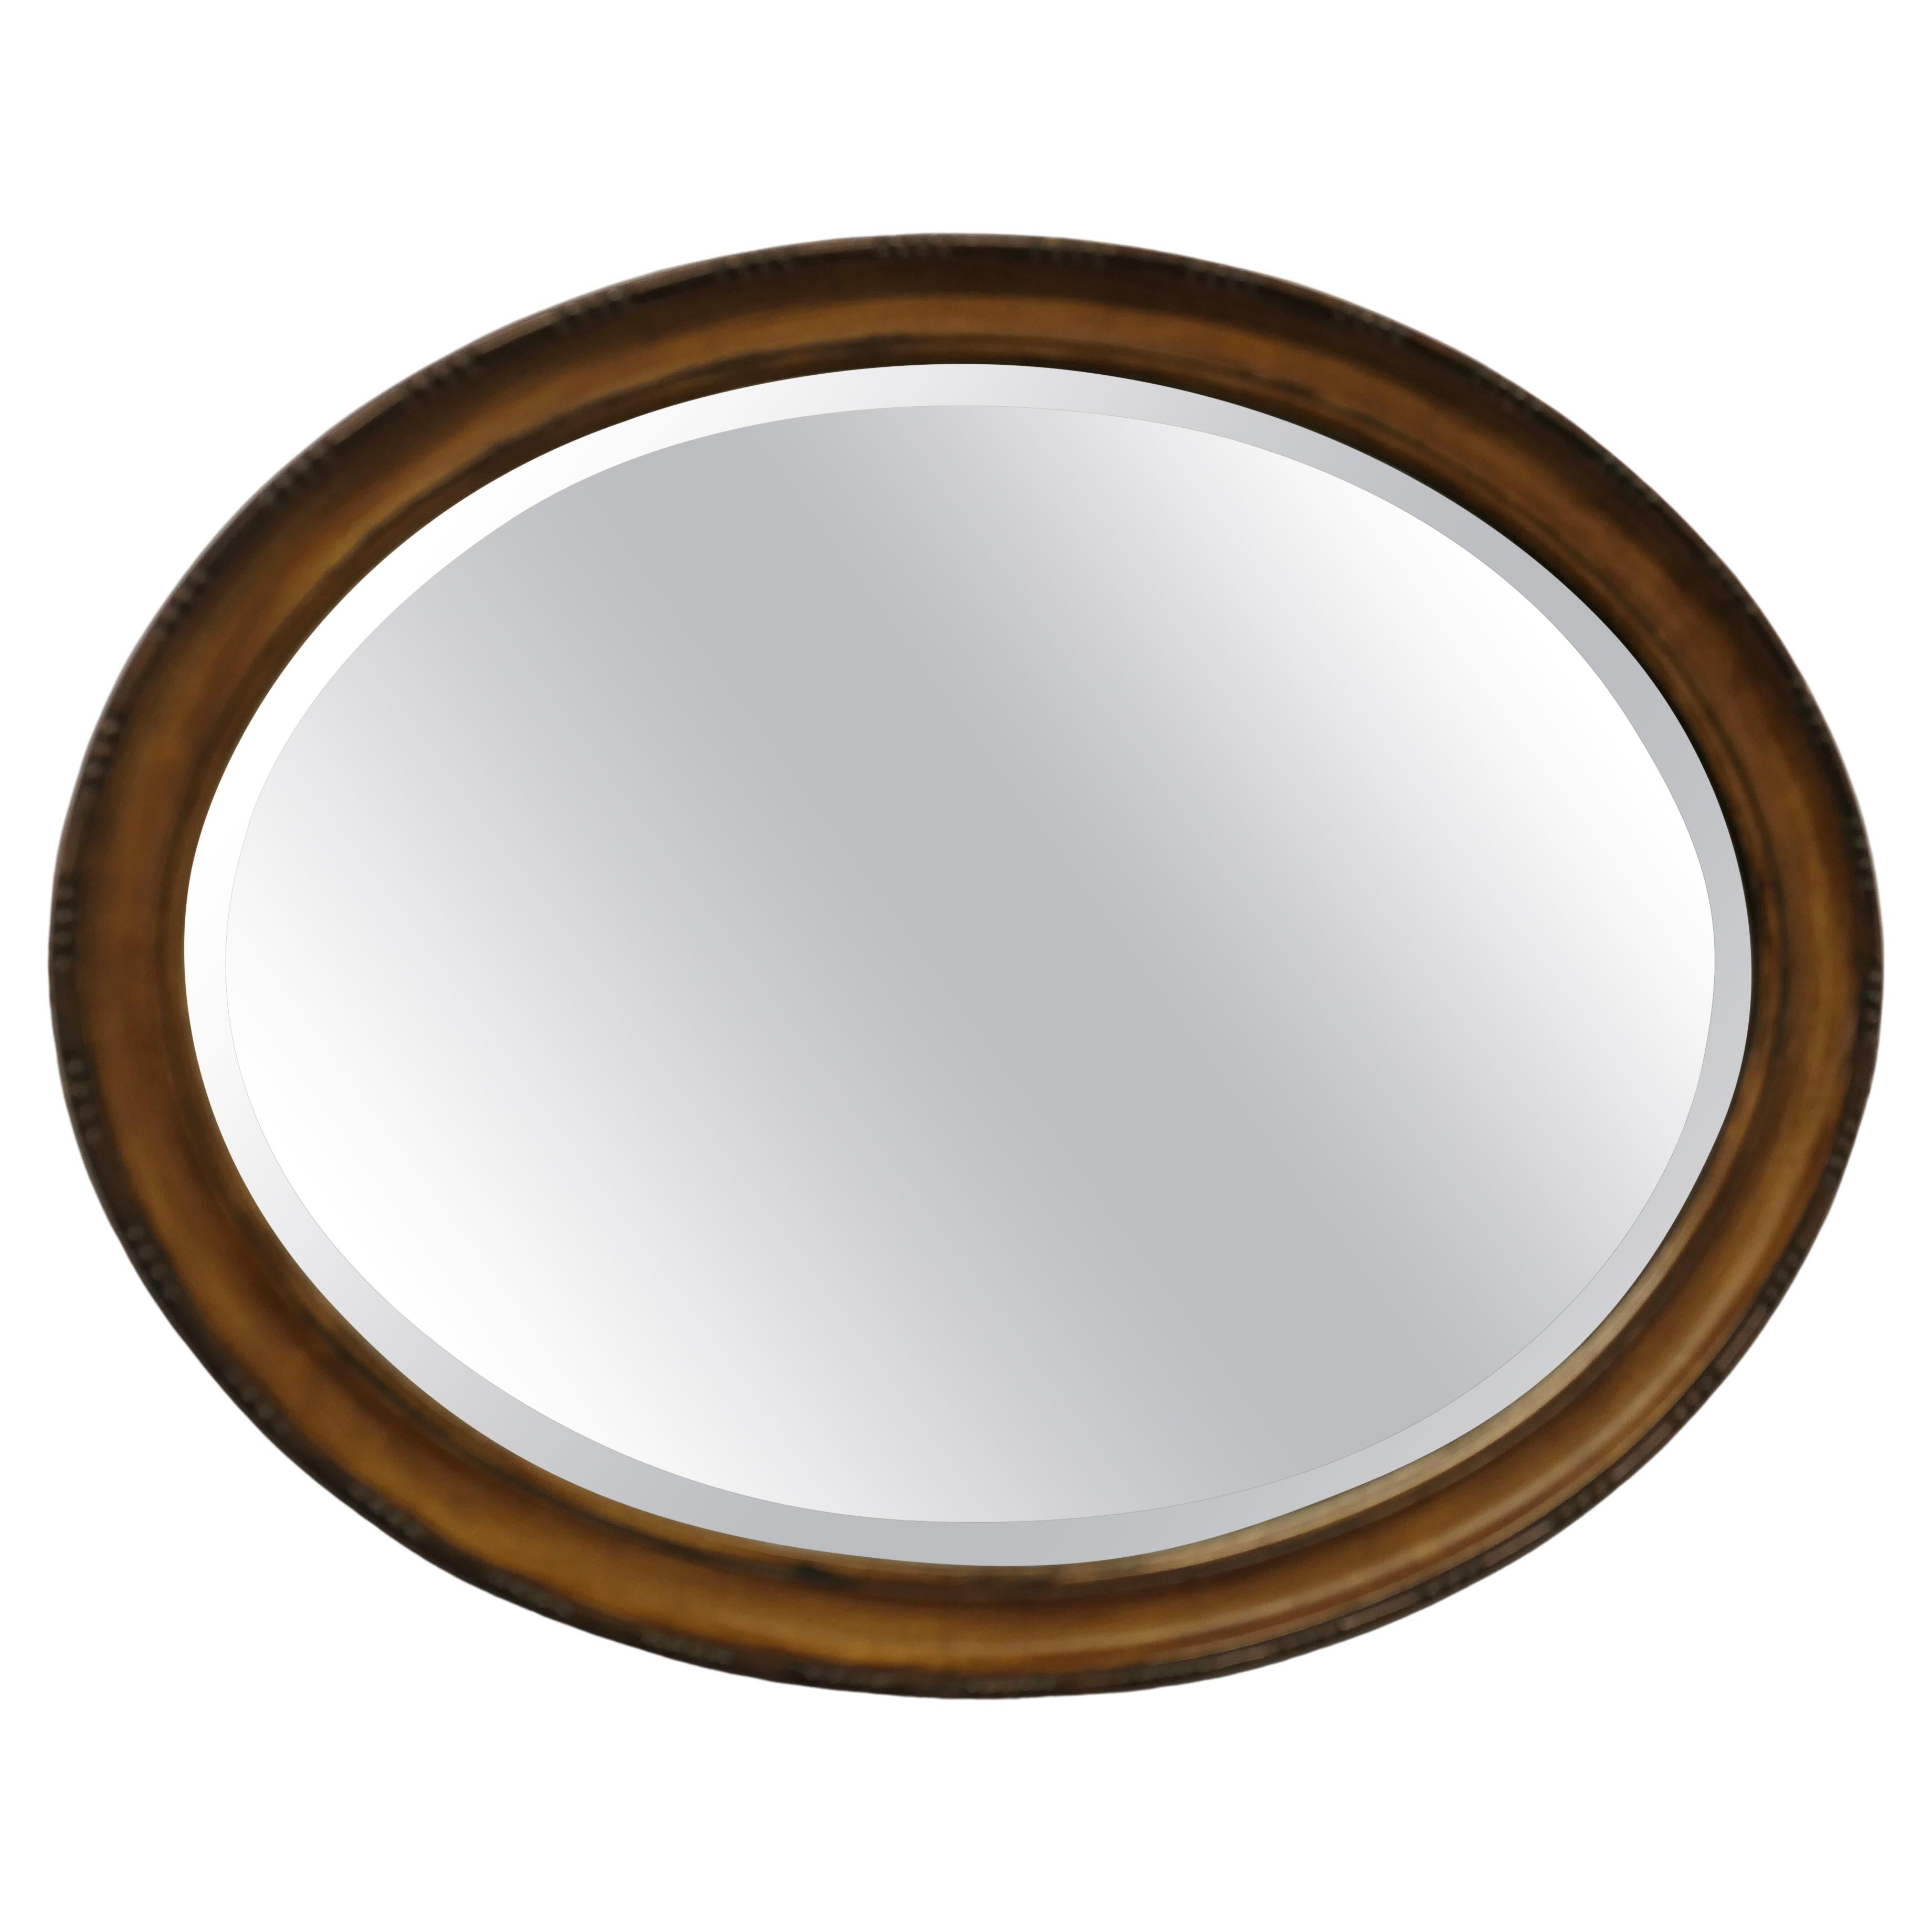 Miroir ovale à finition squelette Ce miroir a un cadre ovale moulé